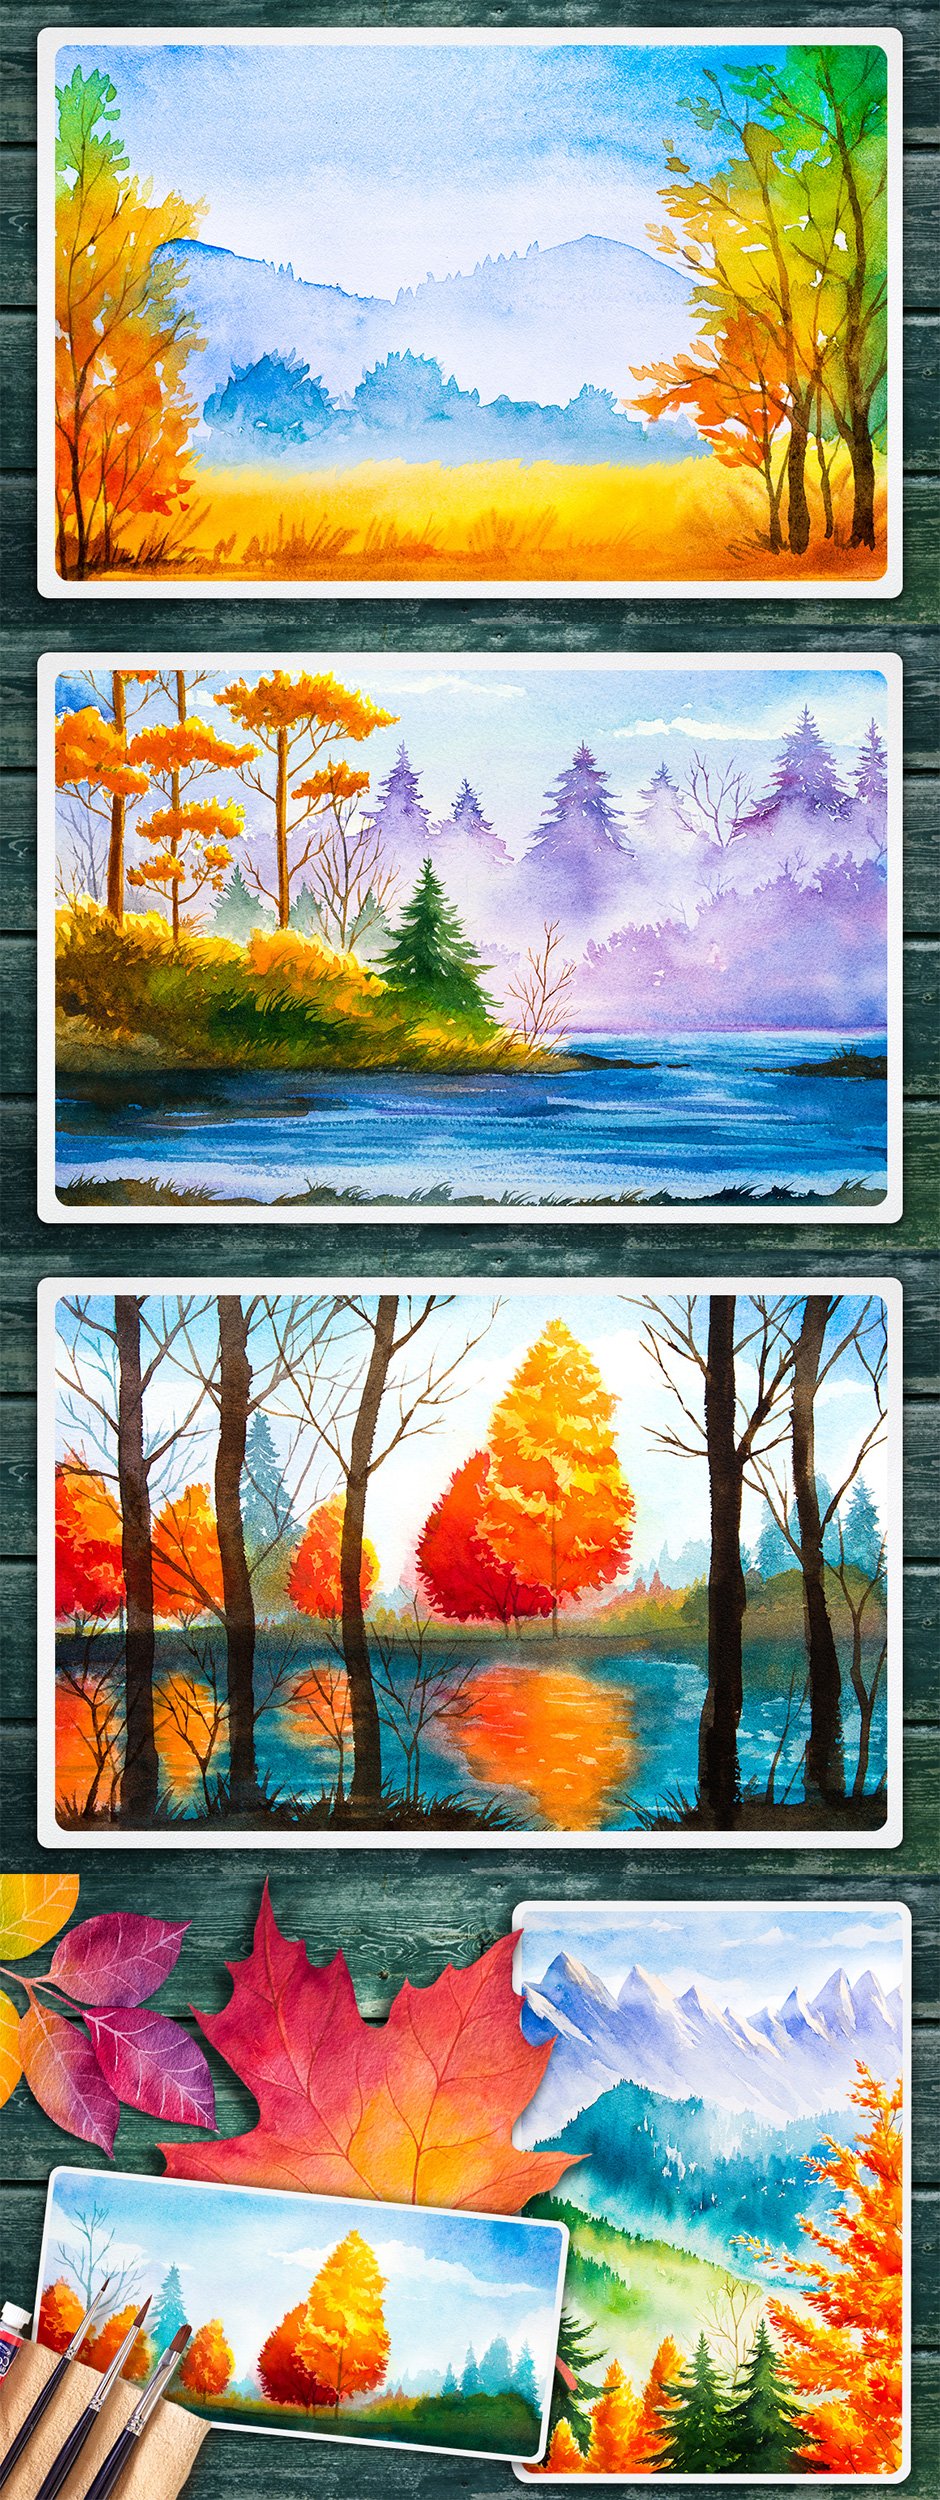 Autumn Watercolor Landscapes